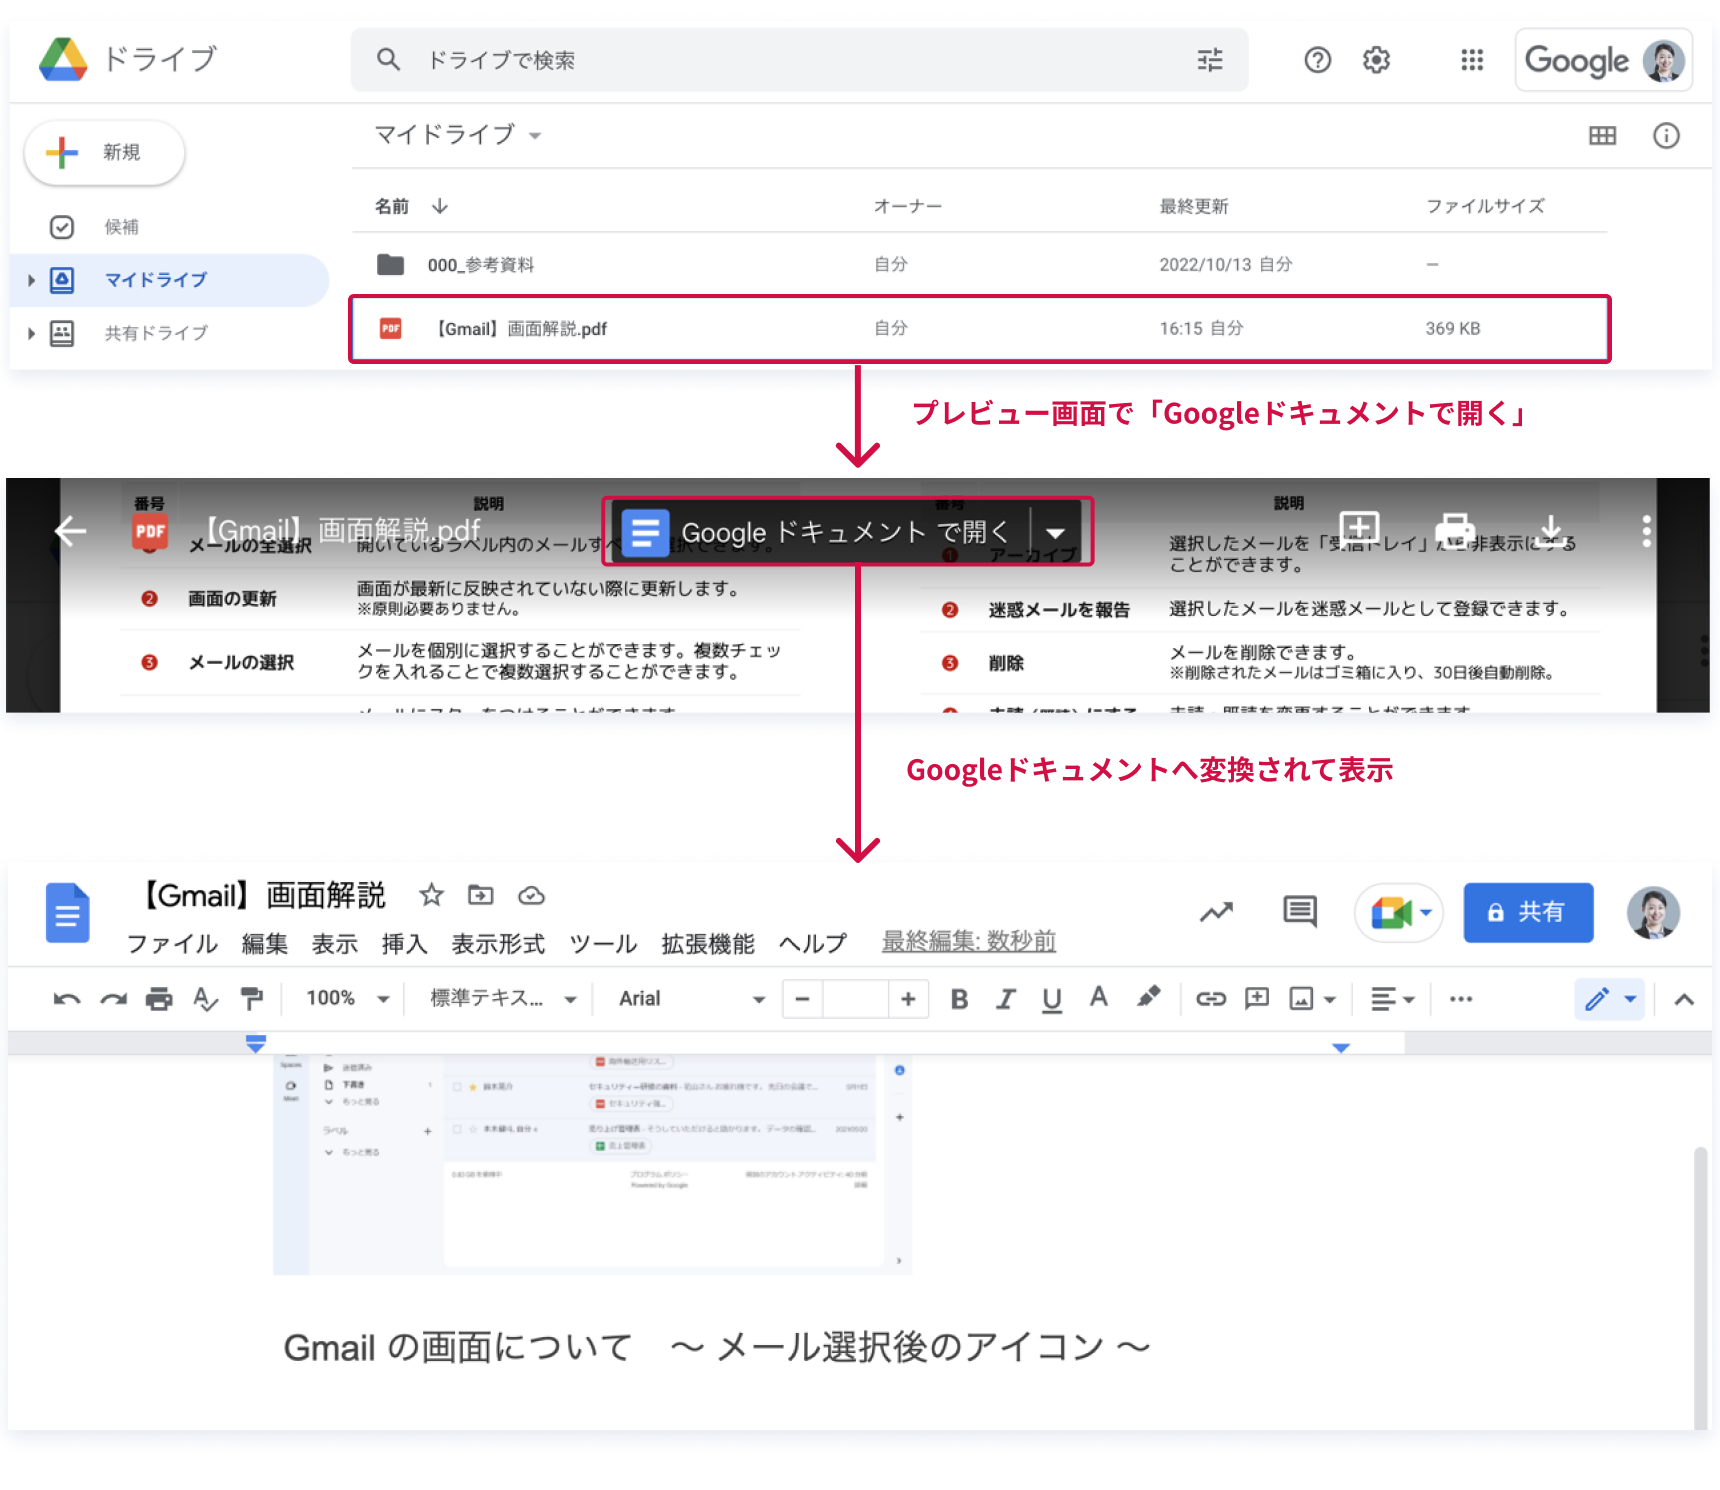 プレビュー画面で「Googleドキュメントで開く」→Googleドキュメントへ変換されて表示